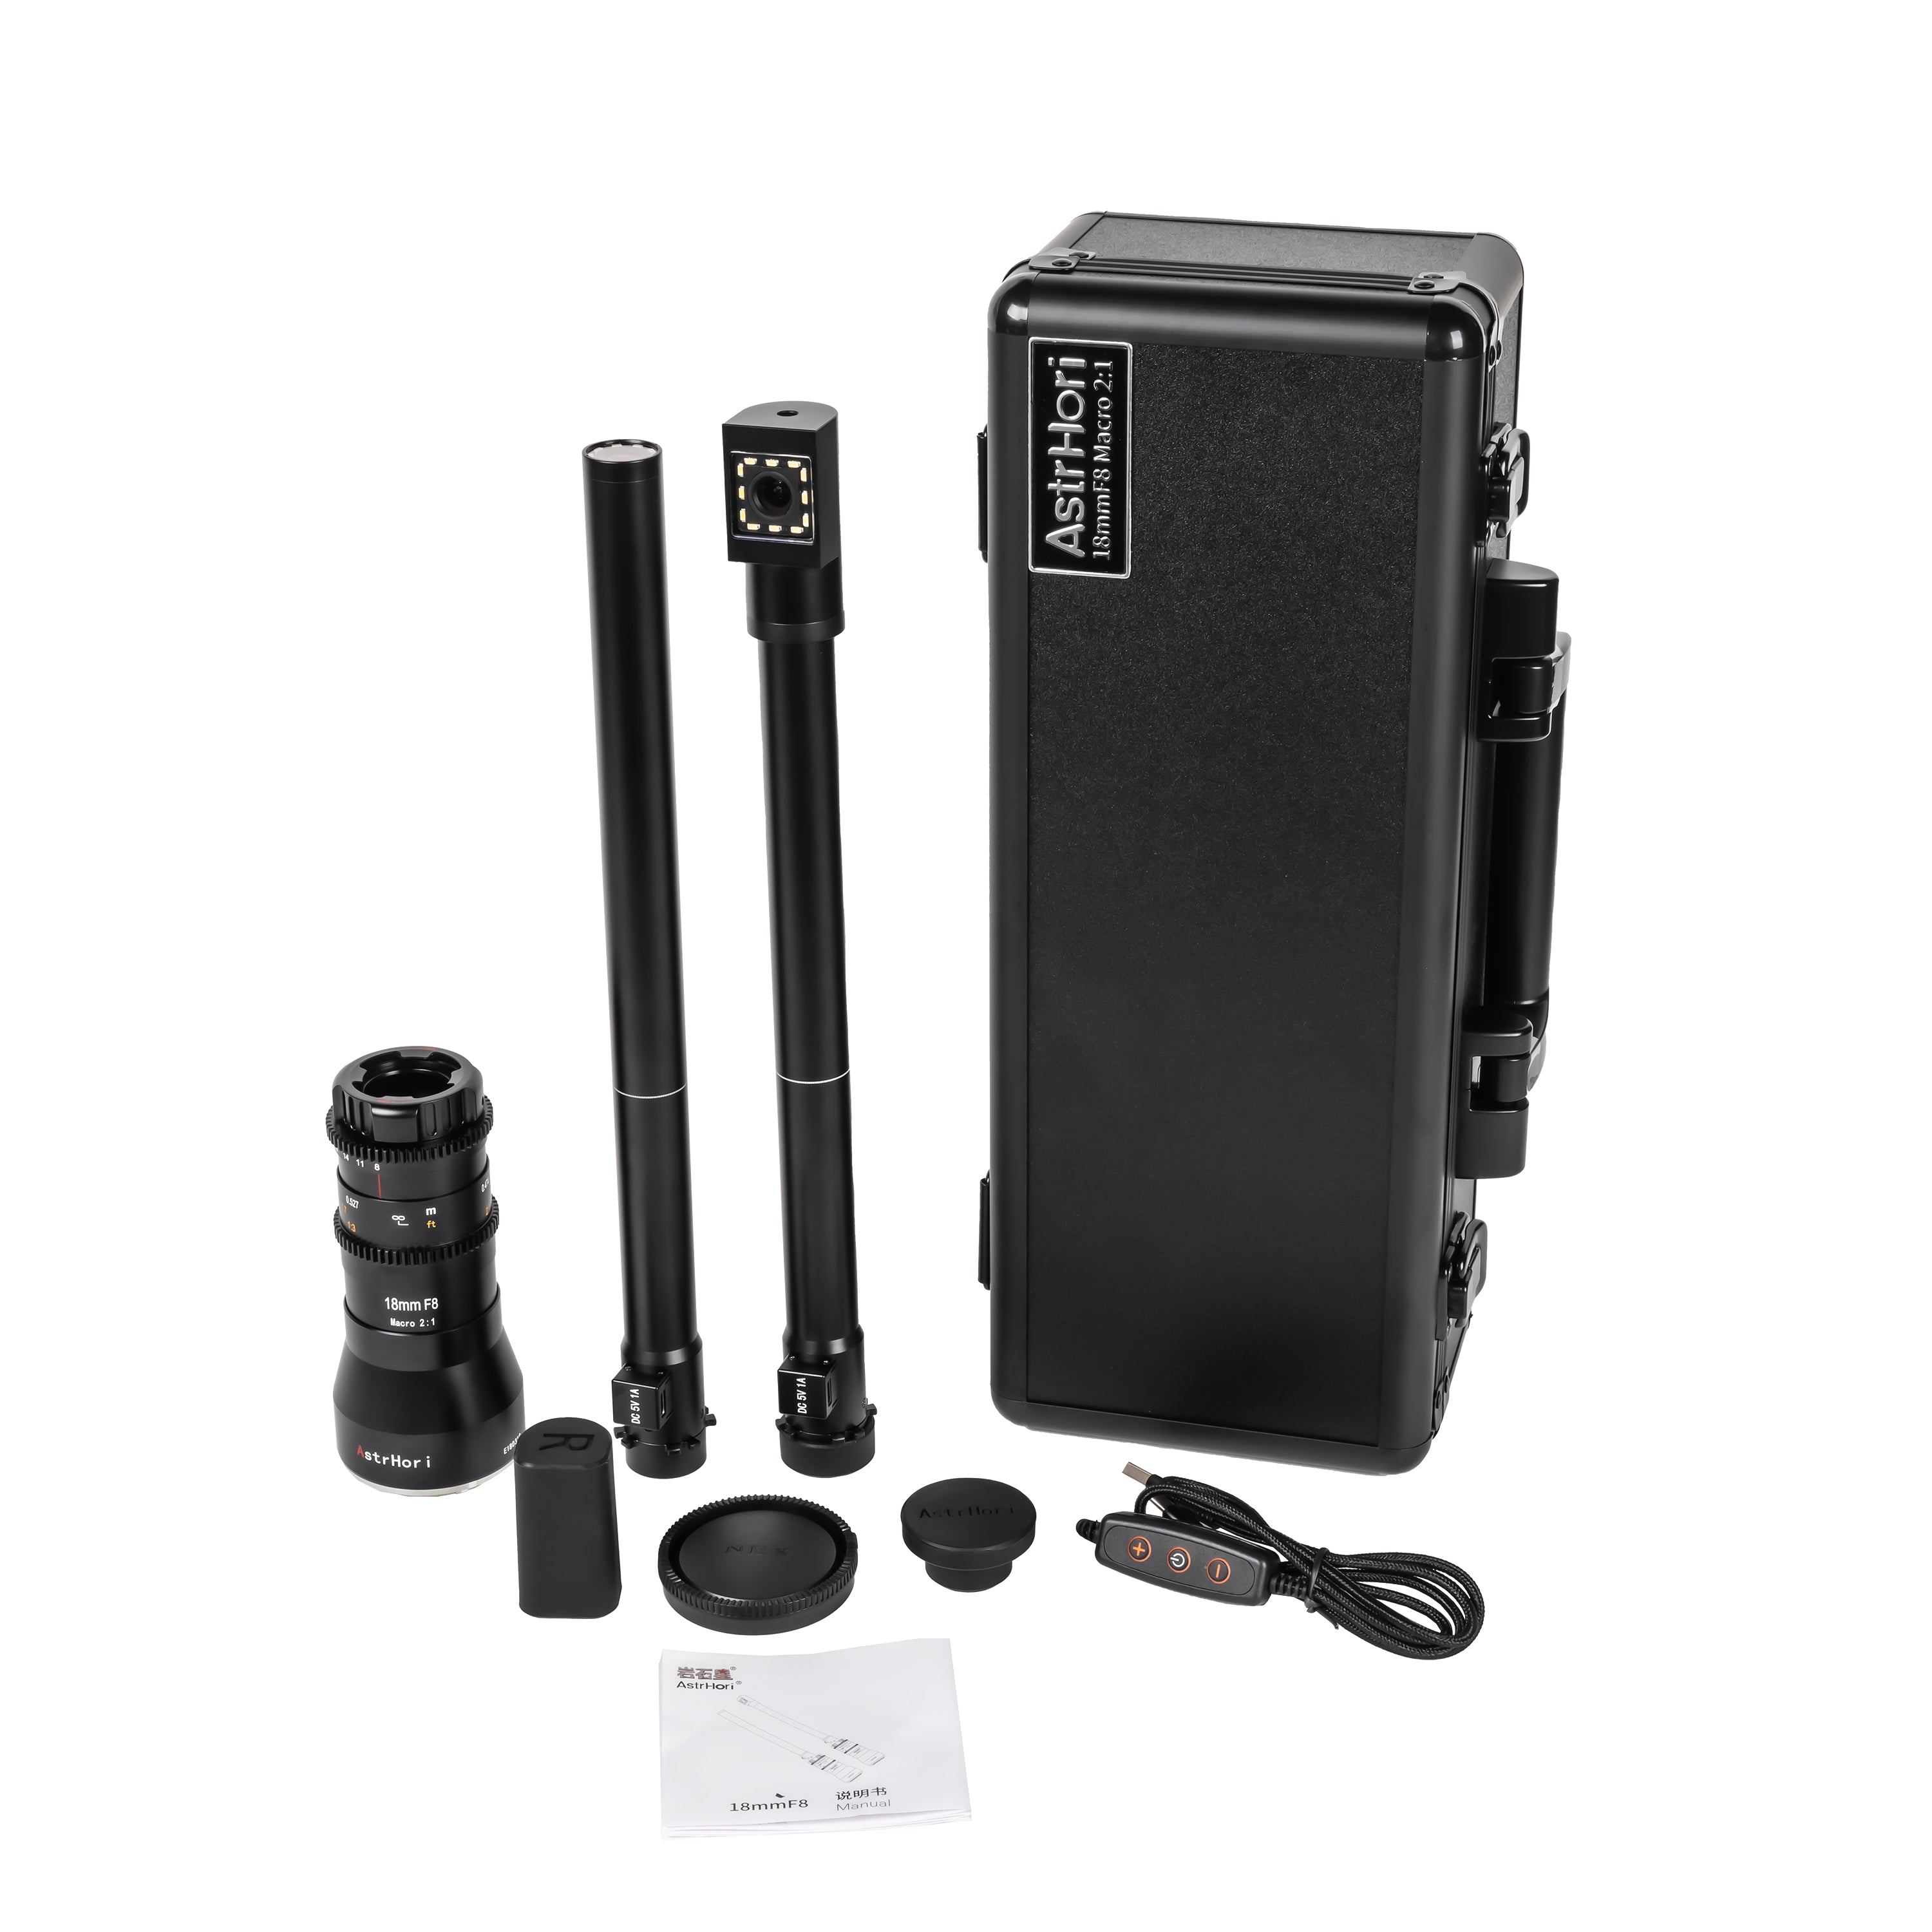 AstrHori 18mm f/8 2x Periscope Probe Macro Lens for Sony/Nikon/Fuji/Canon/M4/3 Cameras